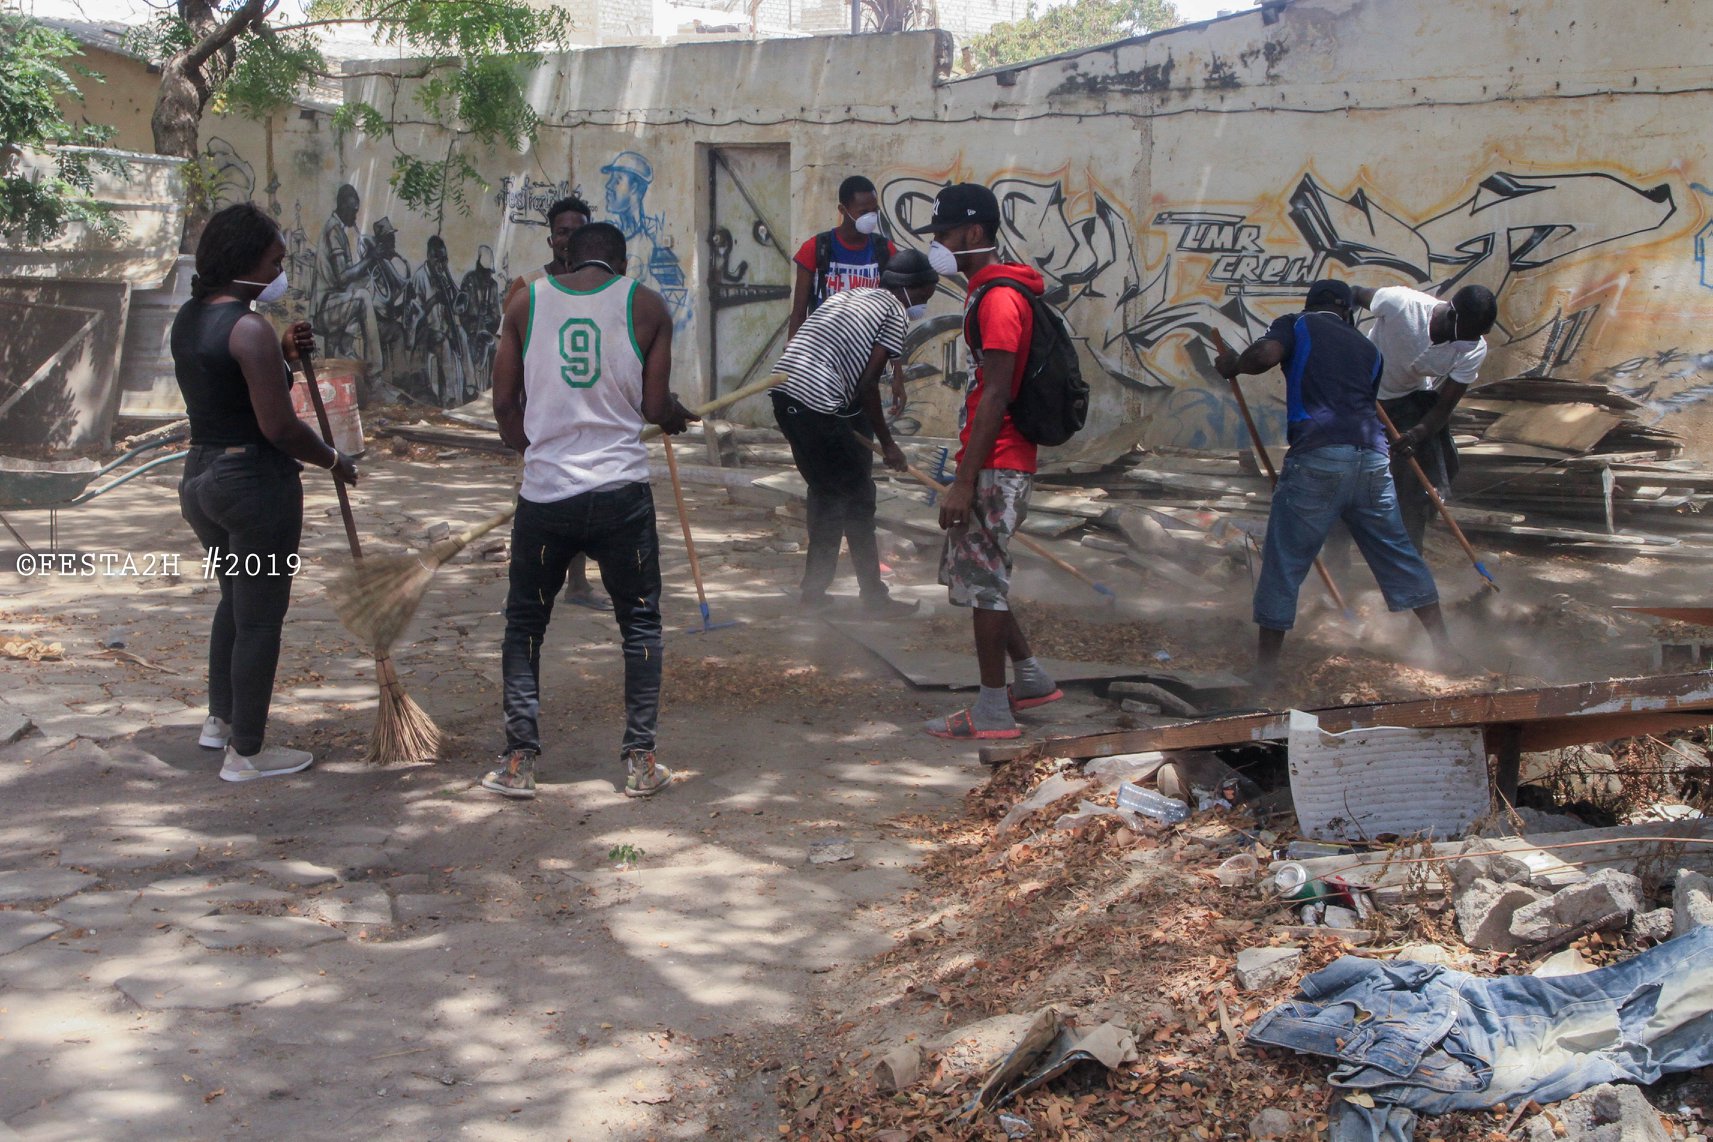 PHOTOS - FESTAH 2H Clean up challenge: Maison de la culture Douta Seck - Quand les rappeurs se mettent au boulot !